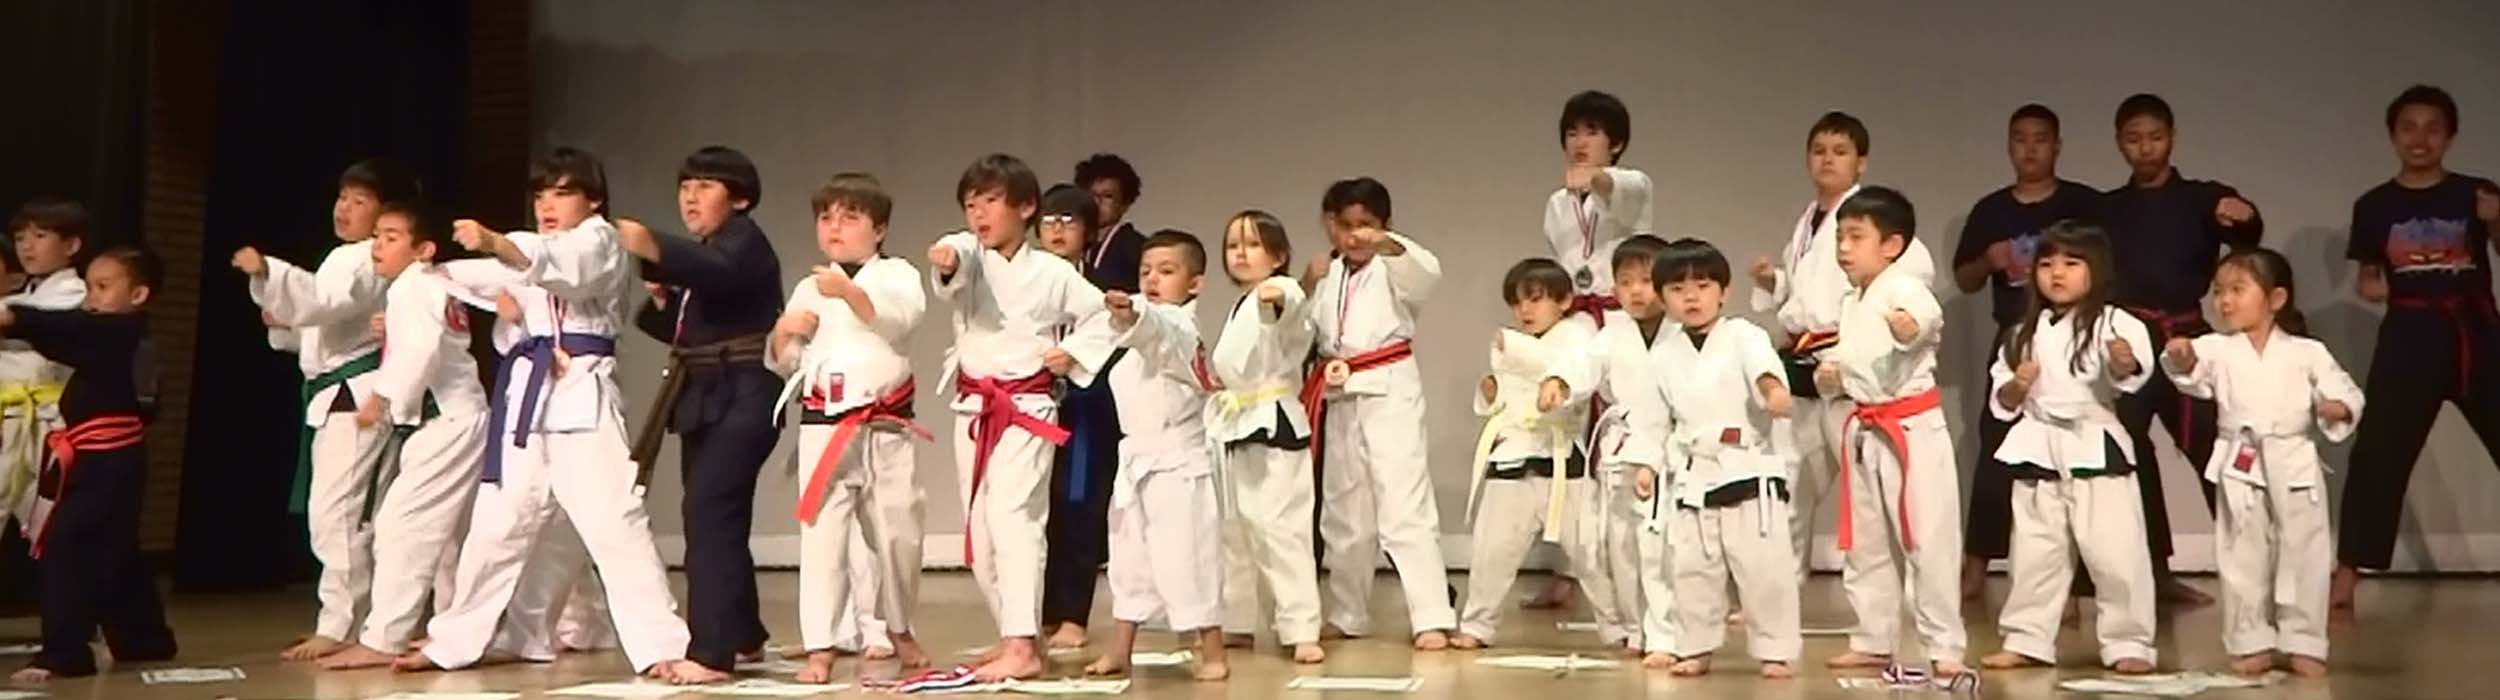 samurai karate for kids